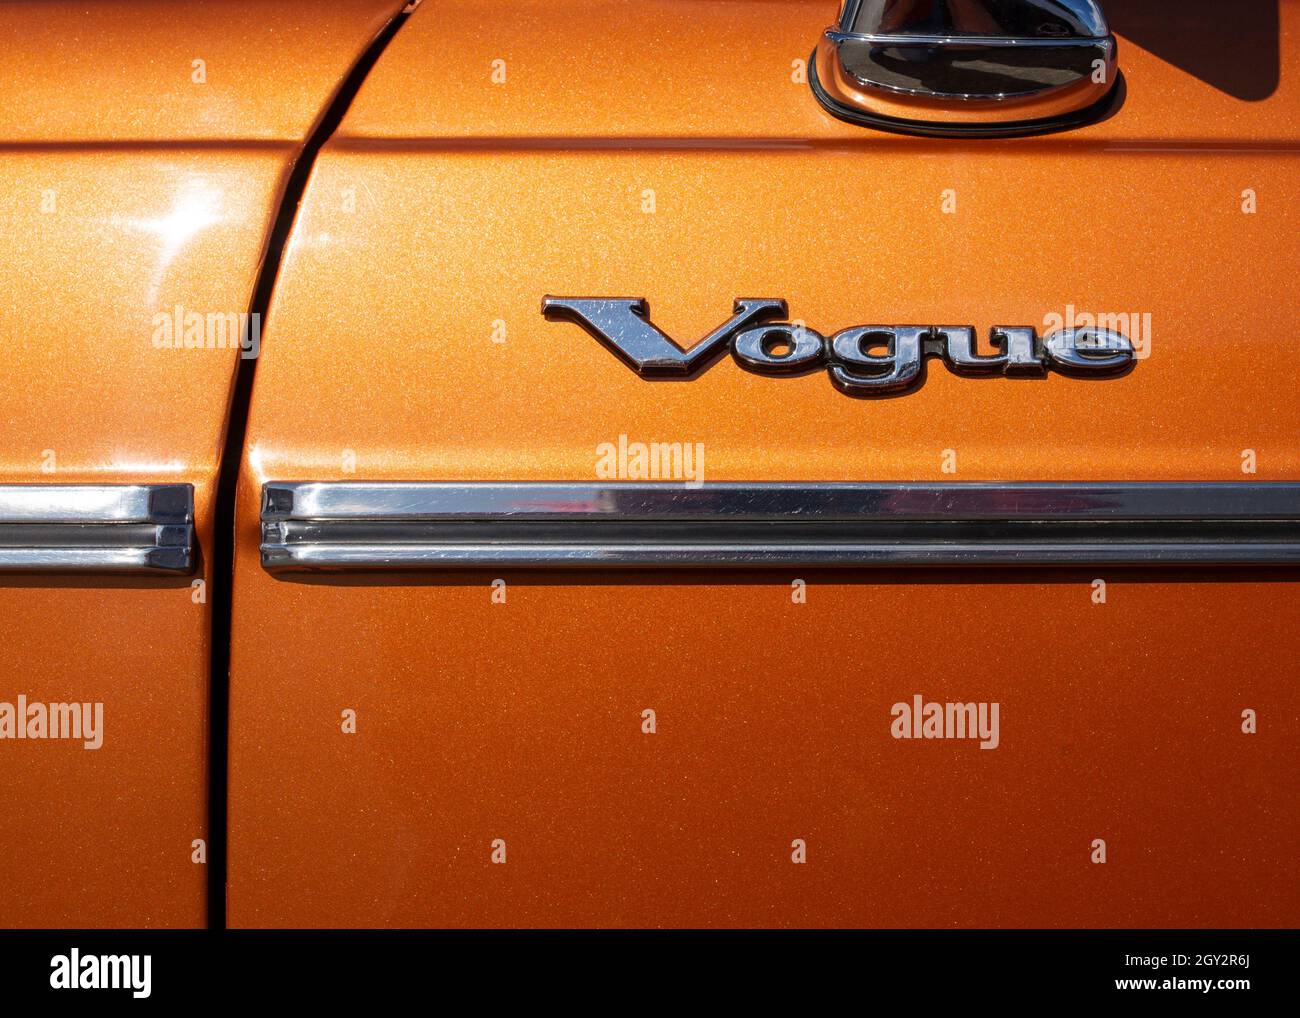 Image de l'écusson chromé sur la porte latérale d'une voiture Sunbeam Vogue des années 1970, le mot Vogue au-dessus d'une bande de porte chromée sur une peinture orange métallique Banque D'Images